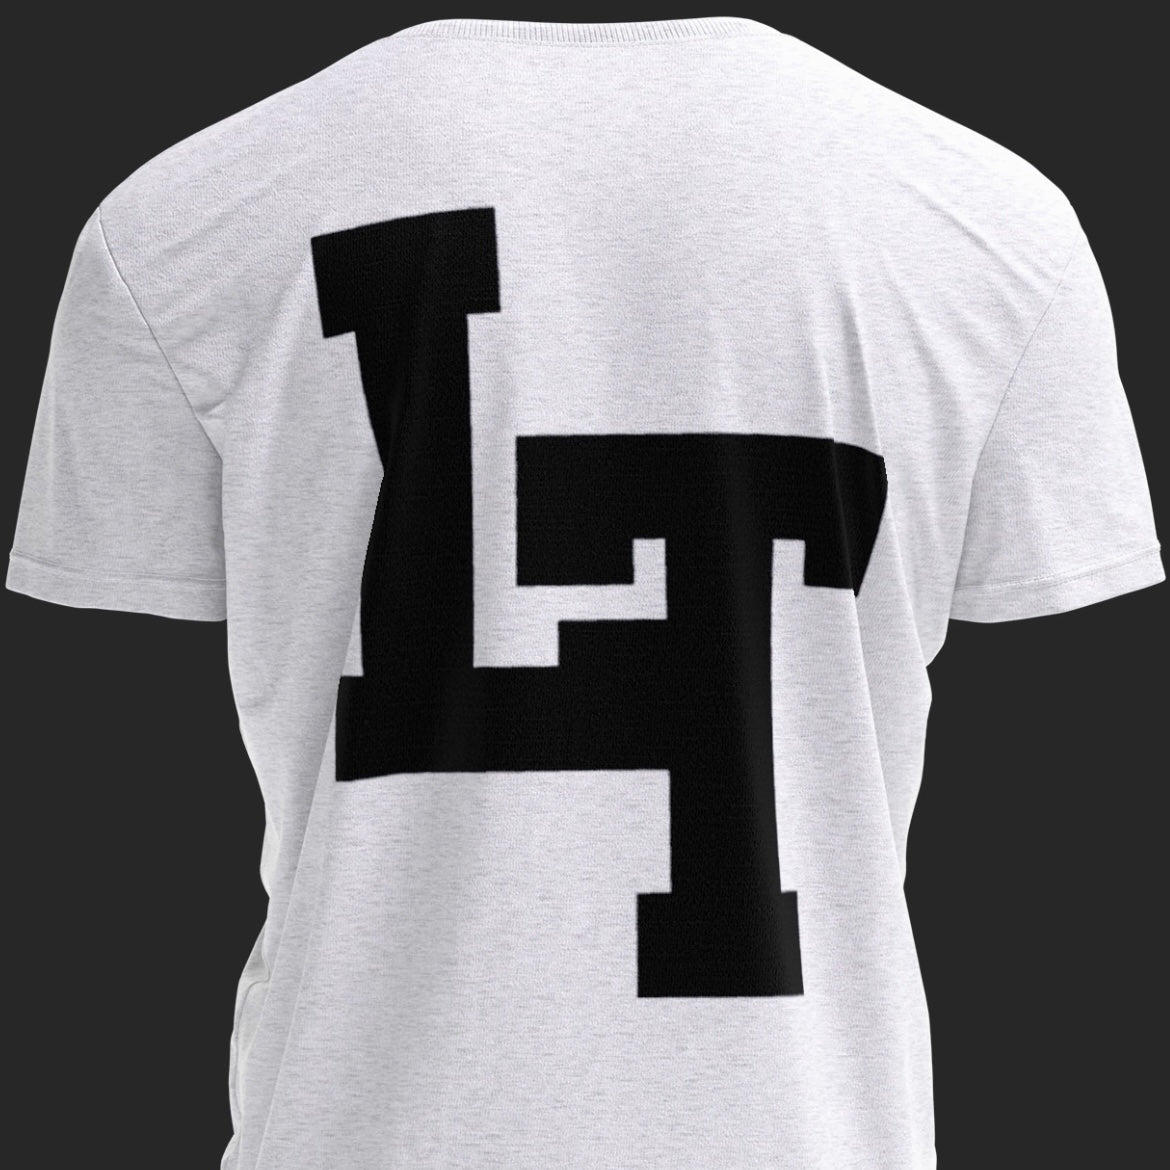 LT Signature Hand T-Shirt (White)